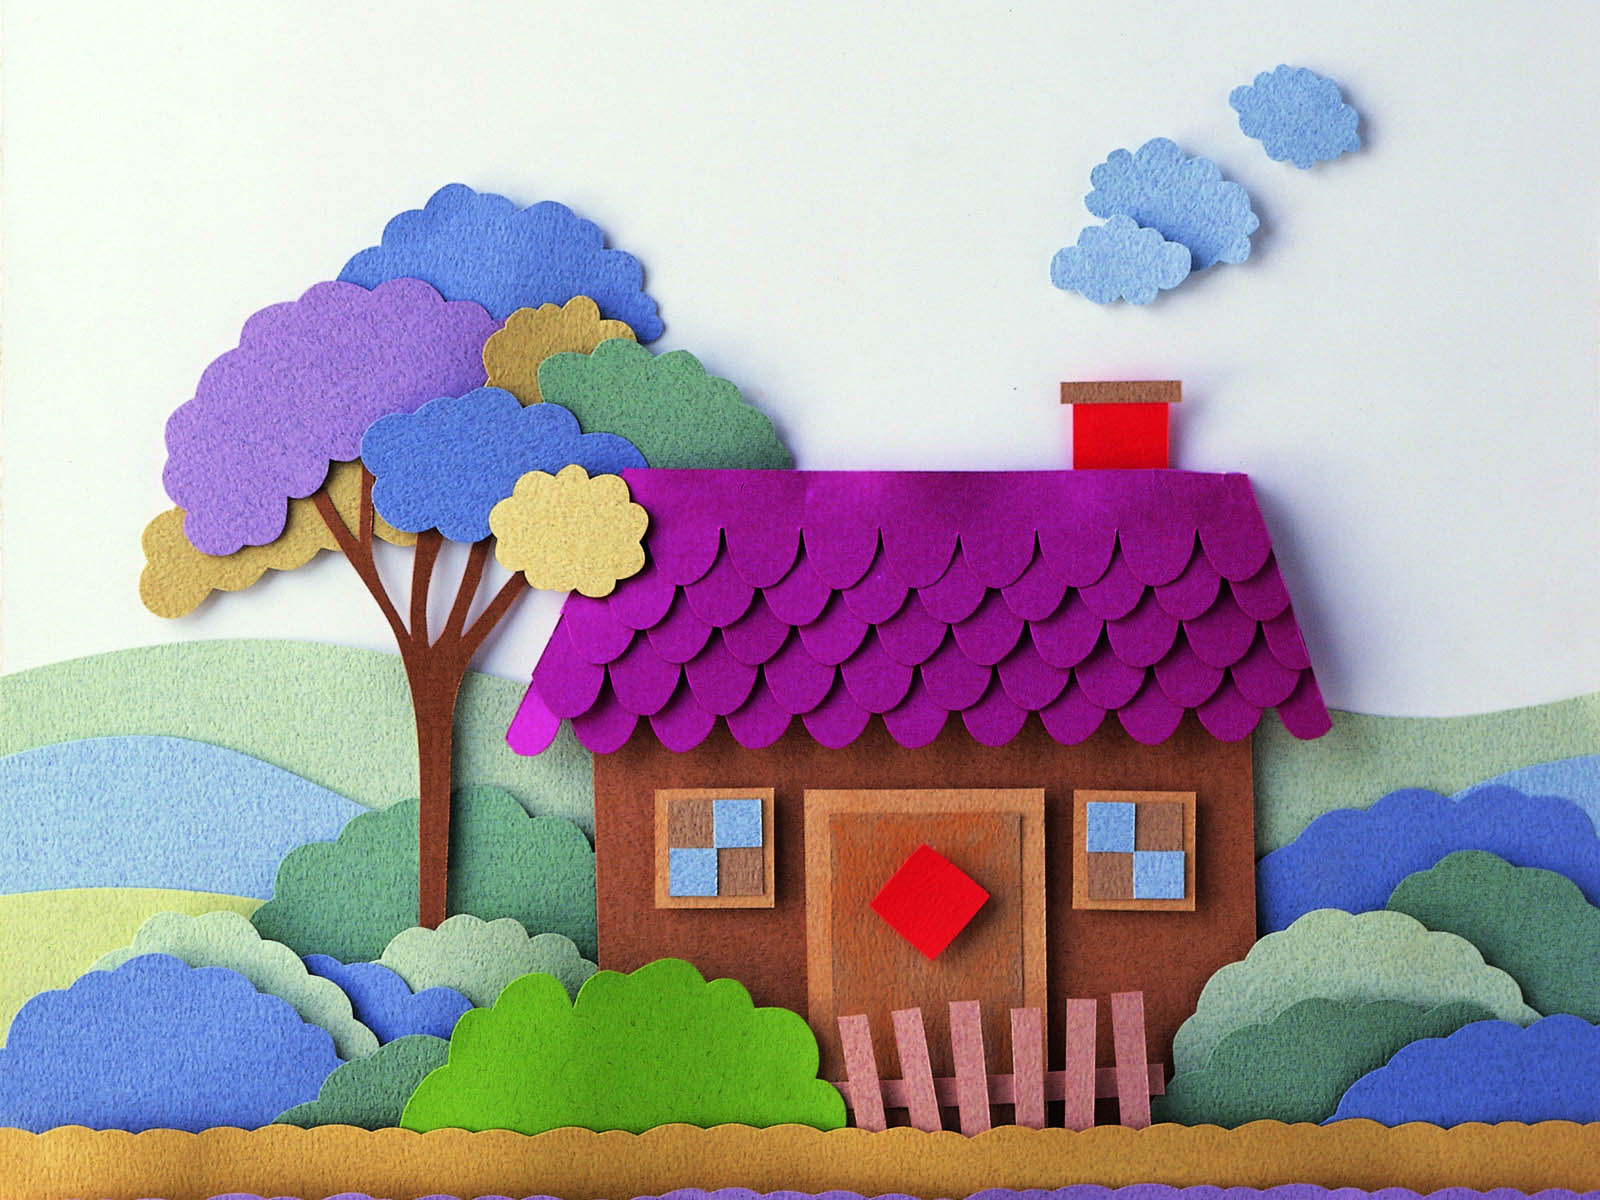 幼儿园剪贴画:漂亮的小房子2幅